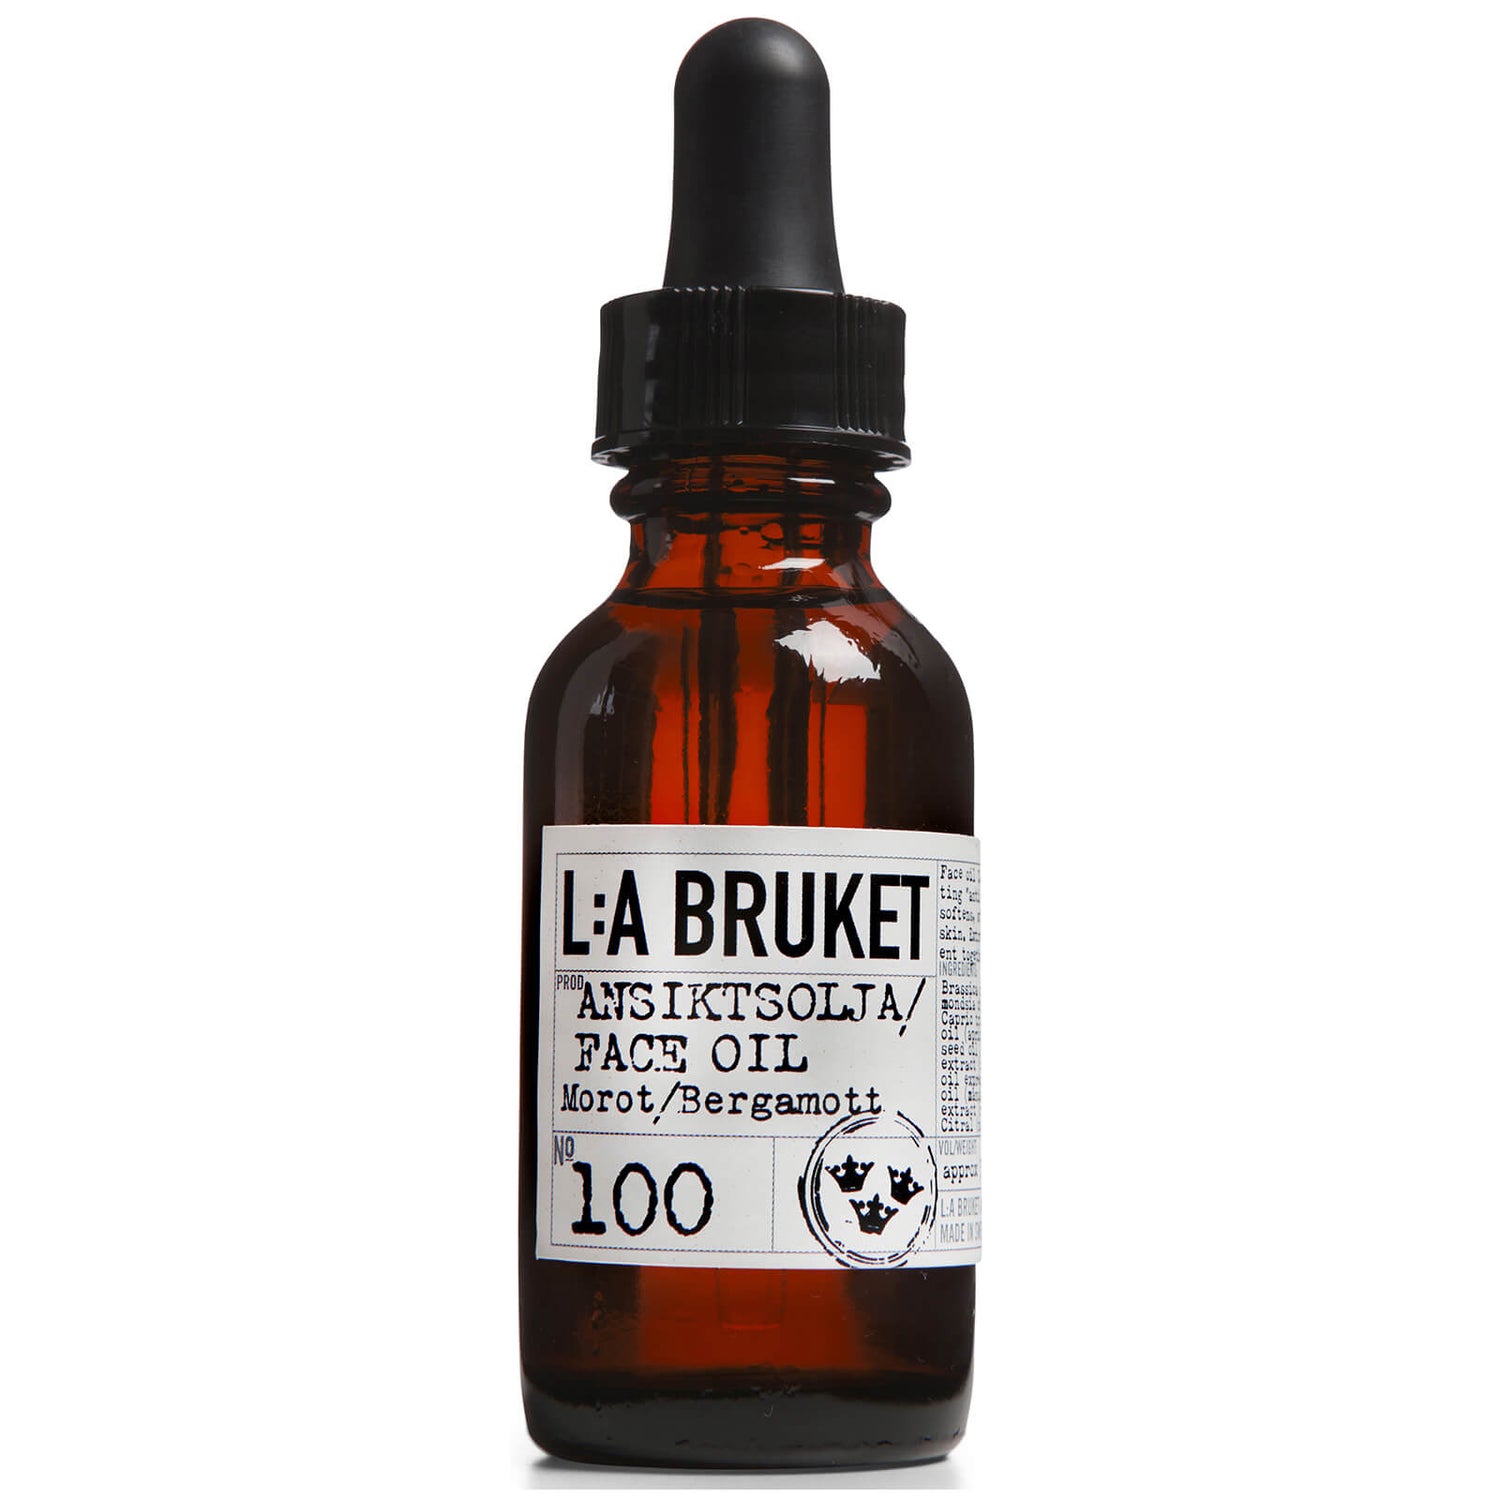 L:A BRUKET No. 100 Face Oil 30ml - Carrot/Bergamot